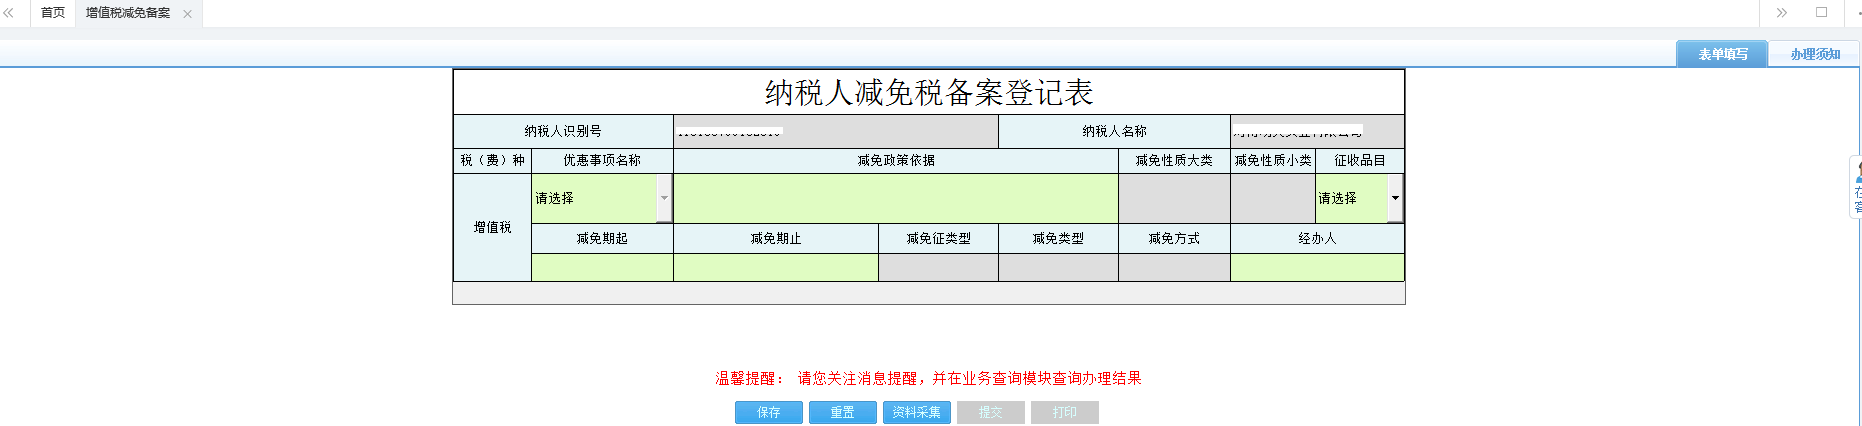 河南省电子税务局消费税减免税备案